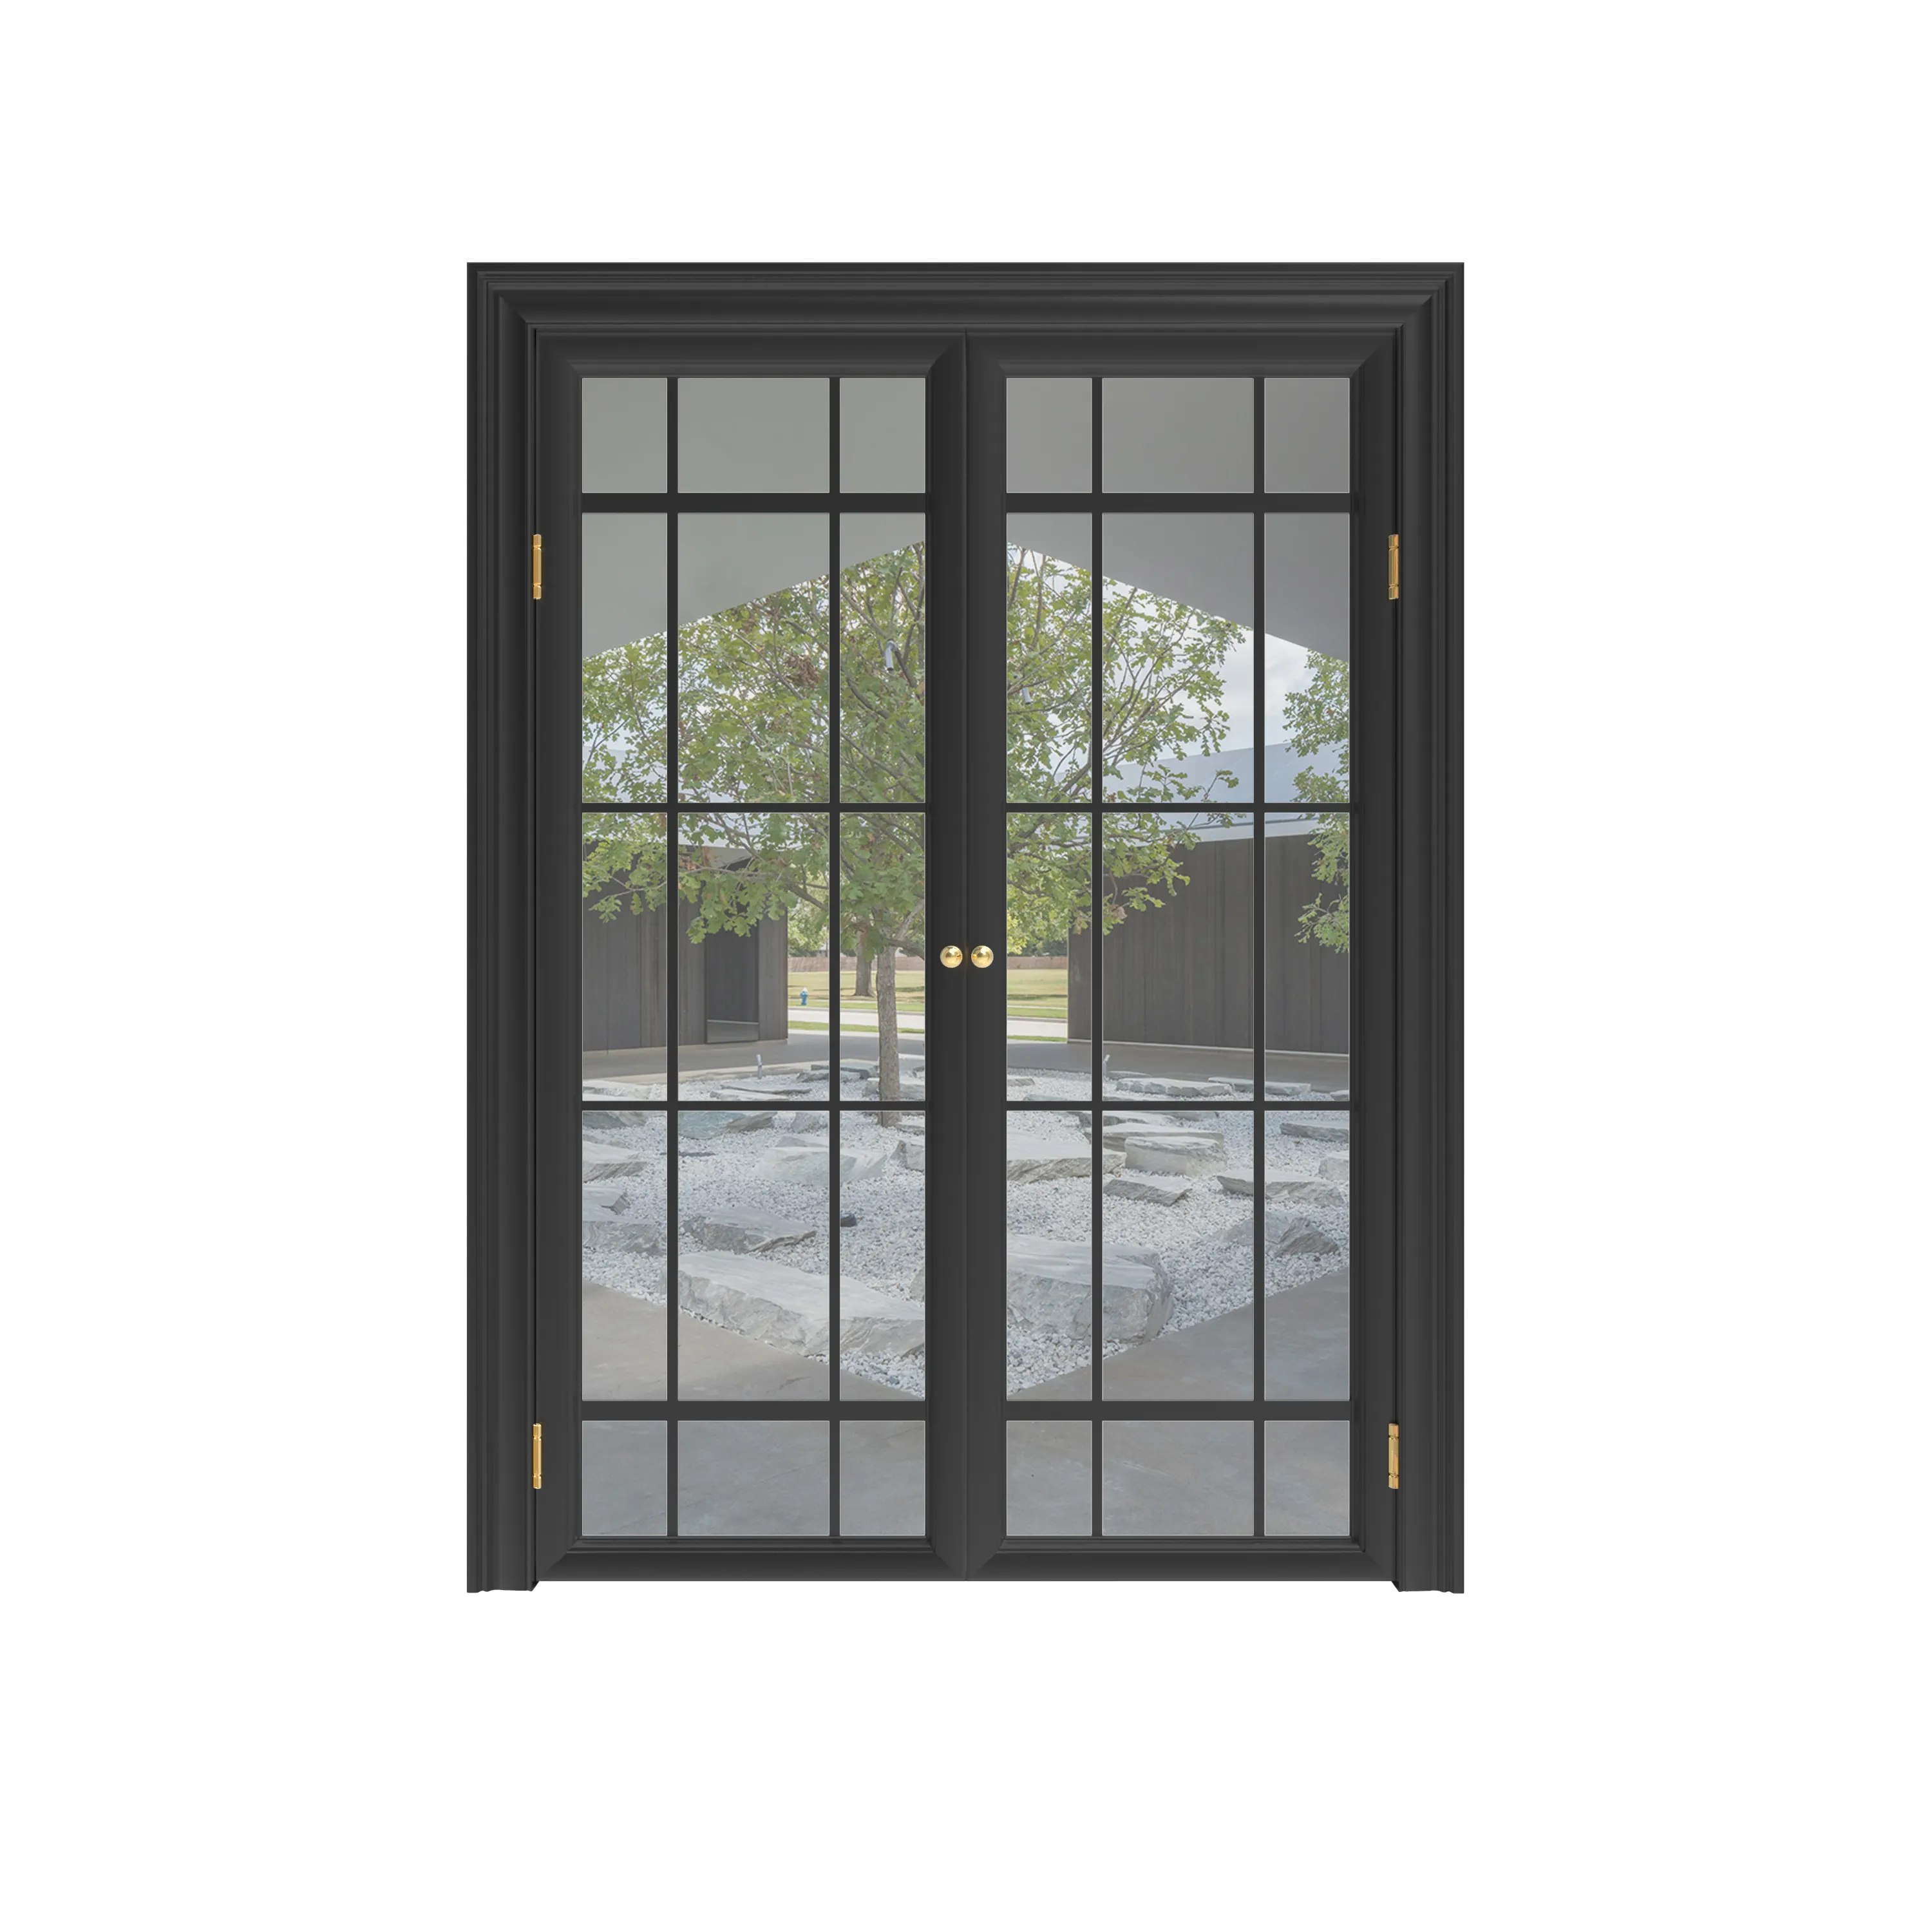 CAYOE-Parrilla de aluminio kerala para puerta delantera, puerta abatible doble para frigorífico